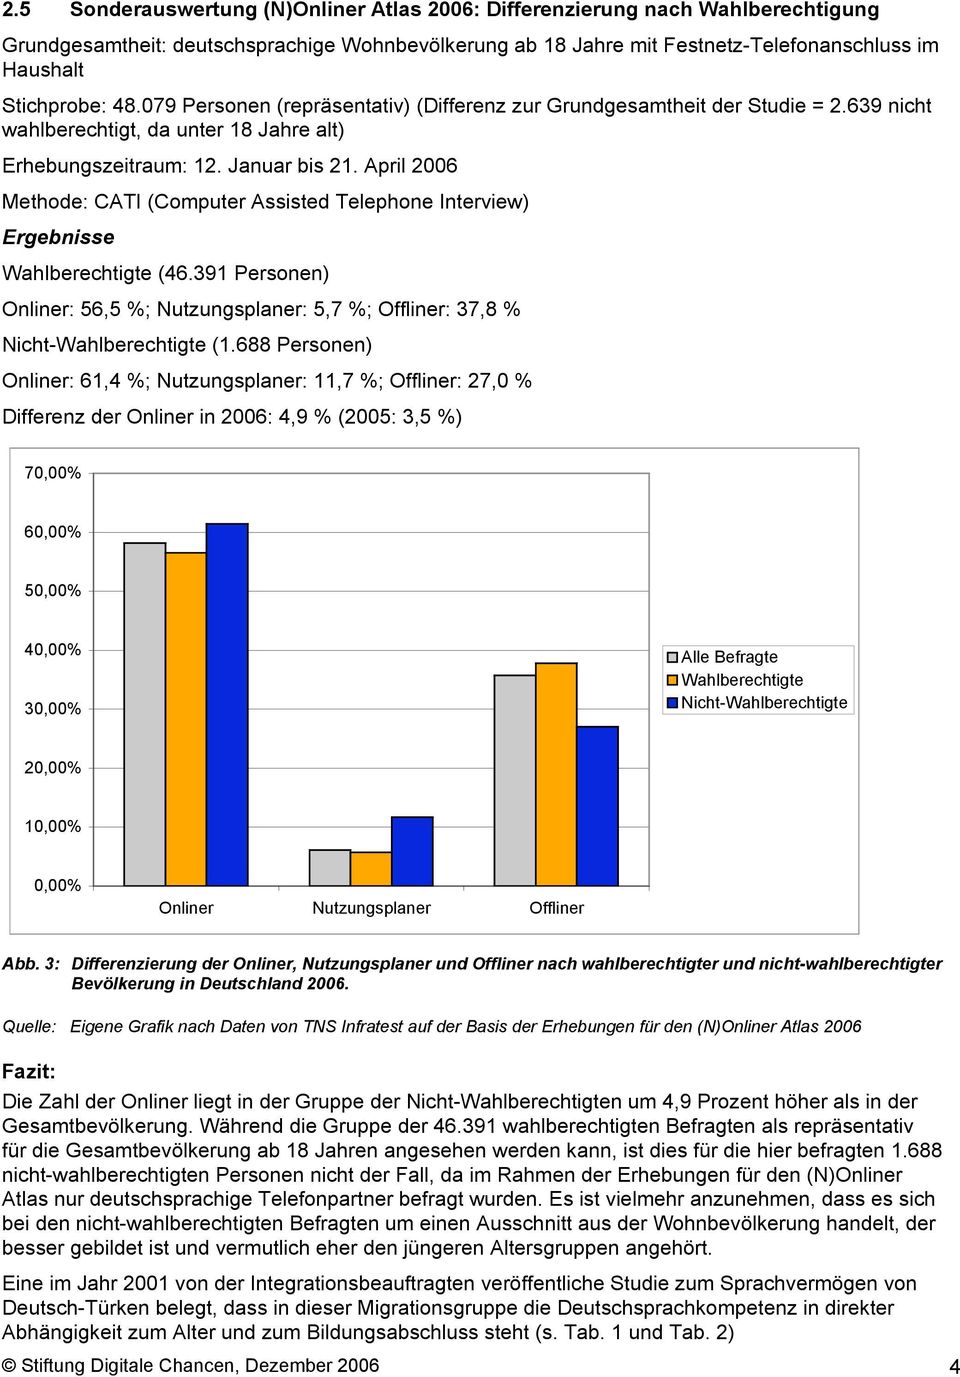 April 2006 Methode: CATI (Computer Assisted Telephone Interview) Ergebnisse Wahlberechtigte (46.391 Personen) Onliner: 56,5 %; Nutzungsplaner: 5,7 %; Offliner: 37,8 % Nicht-Wahlberechtigte (1.